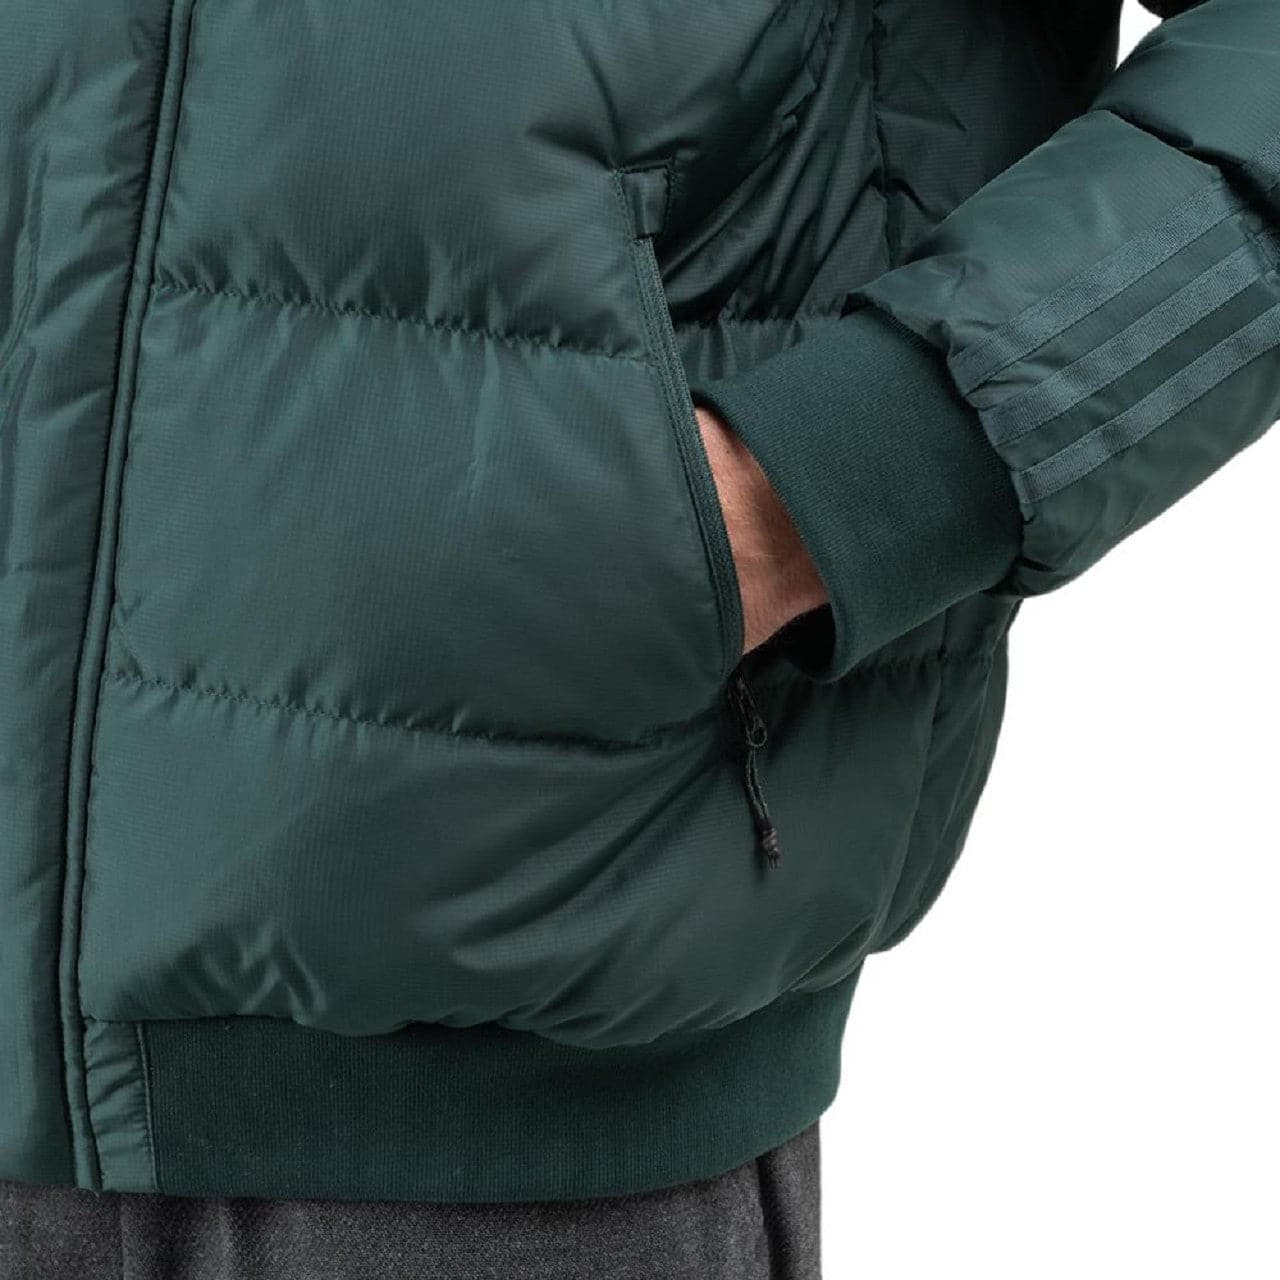 adidas x Jonah Hill Puffer Jacket (Dunkelgrün)  - Allike Store